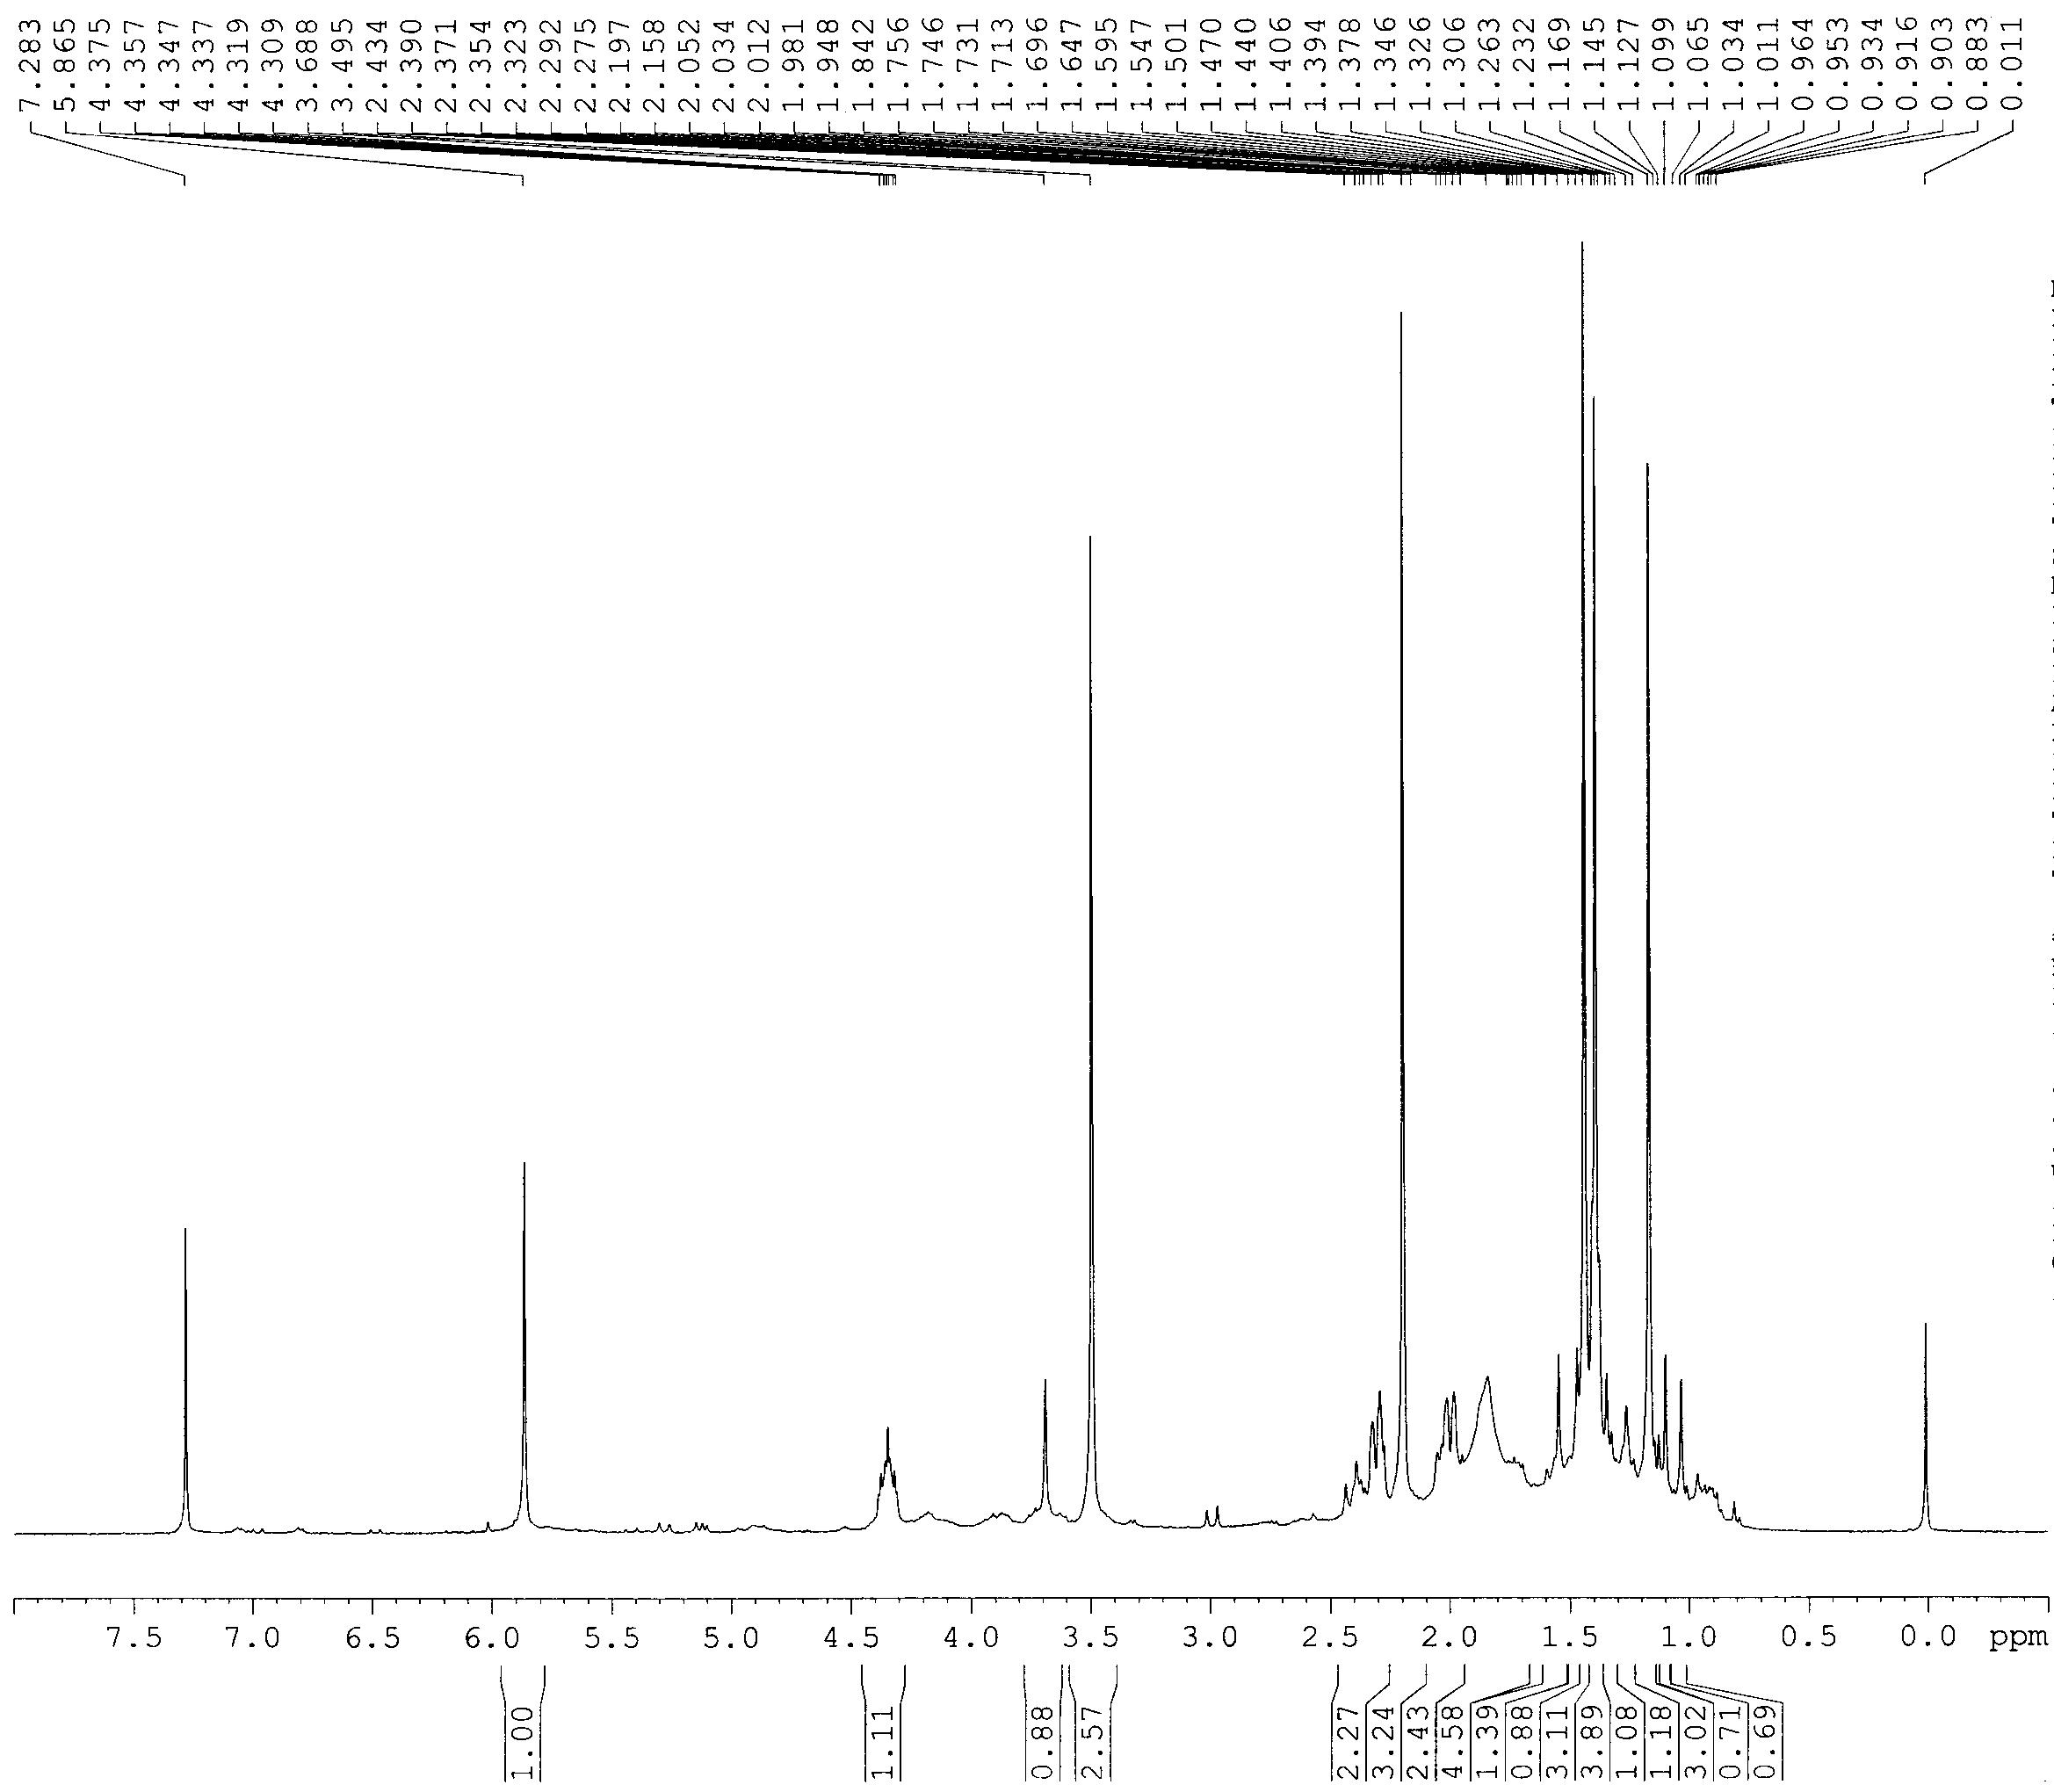 1H-NMR spectrum of compound 6